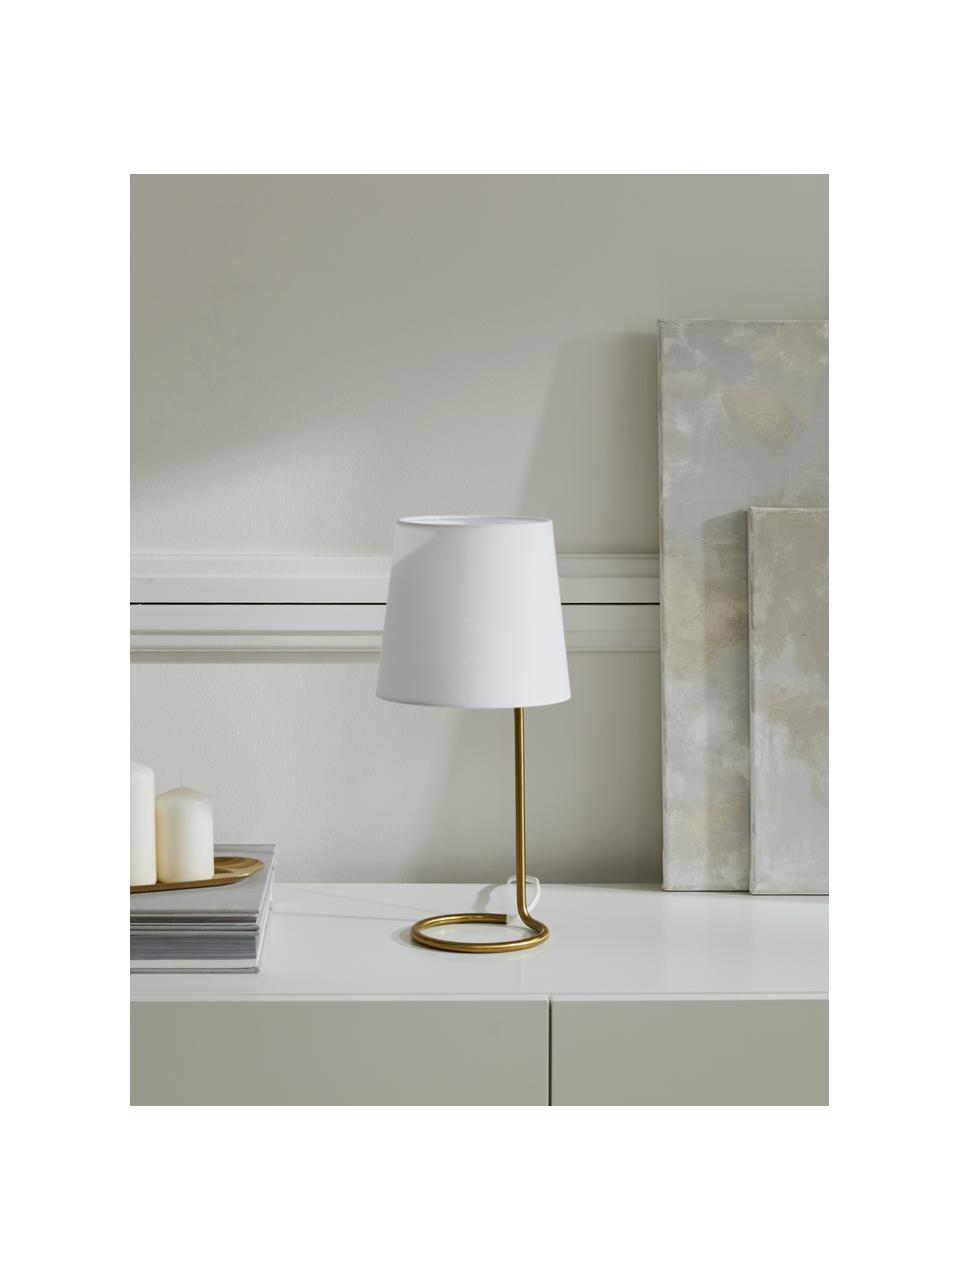 Tischlampe Cade, Lampenschirm: Textil, Lampenfuß: Metall, gebürstet, Weiß, Goldfarben, Ø 19 x H 42 cm